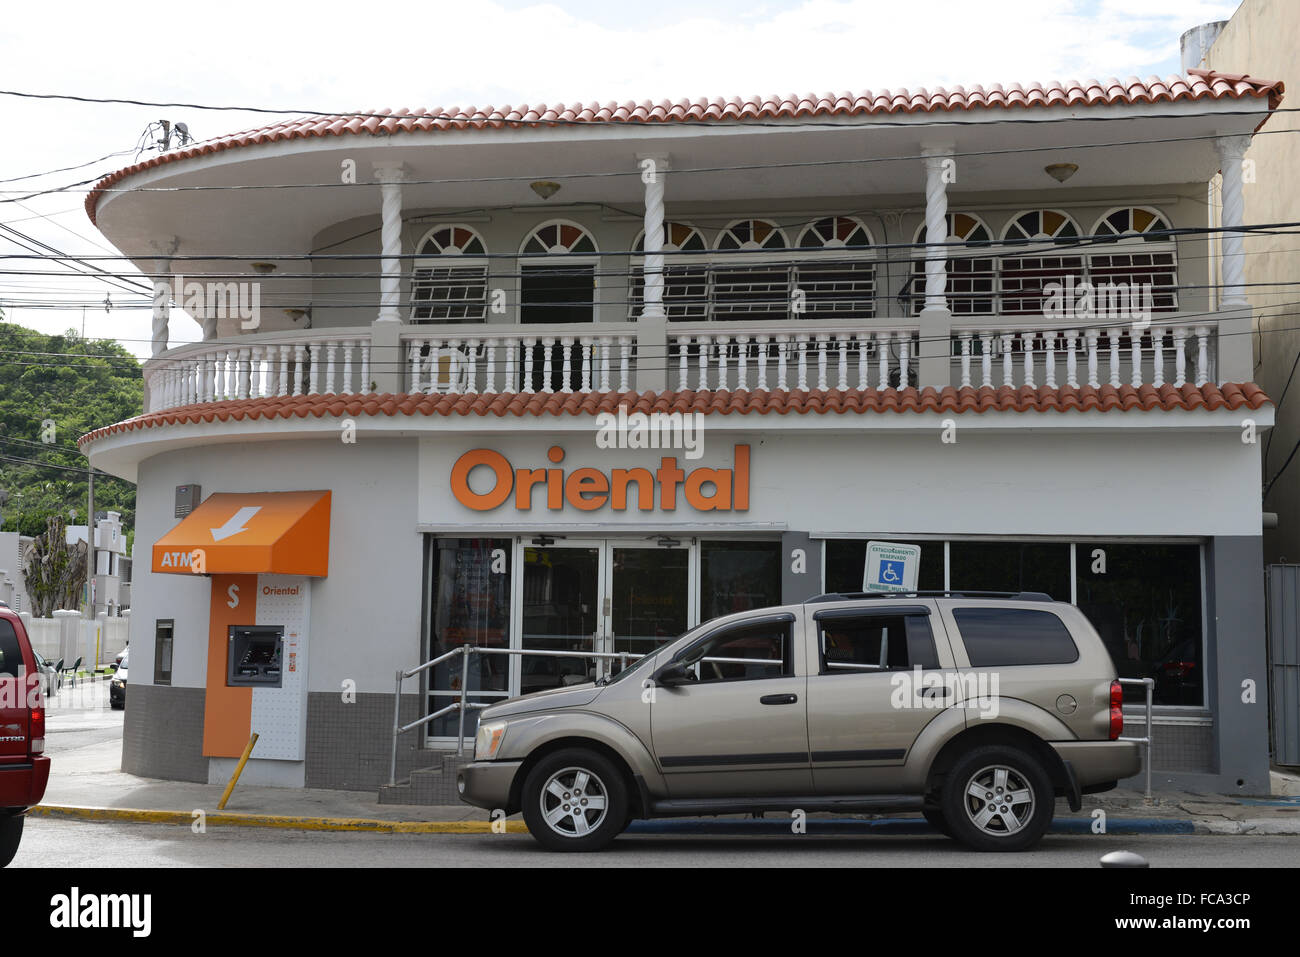 Oriental Bank ist eine der größten Banken in der Insel. Es wurde 1964 gegründet. Penuelas, Puerto Rico. Karibik-Insel. Stockfoto